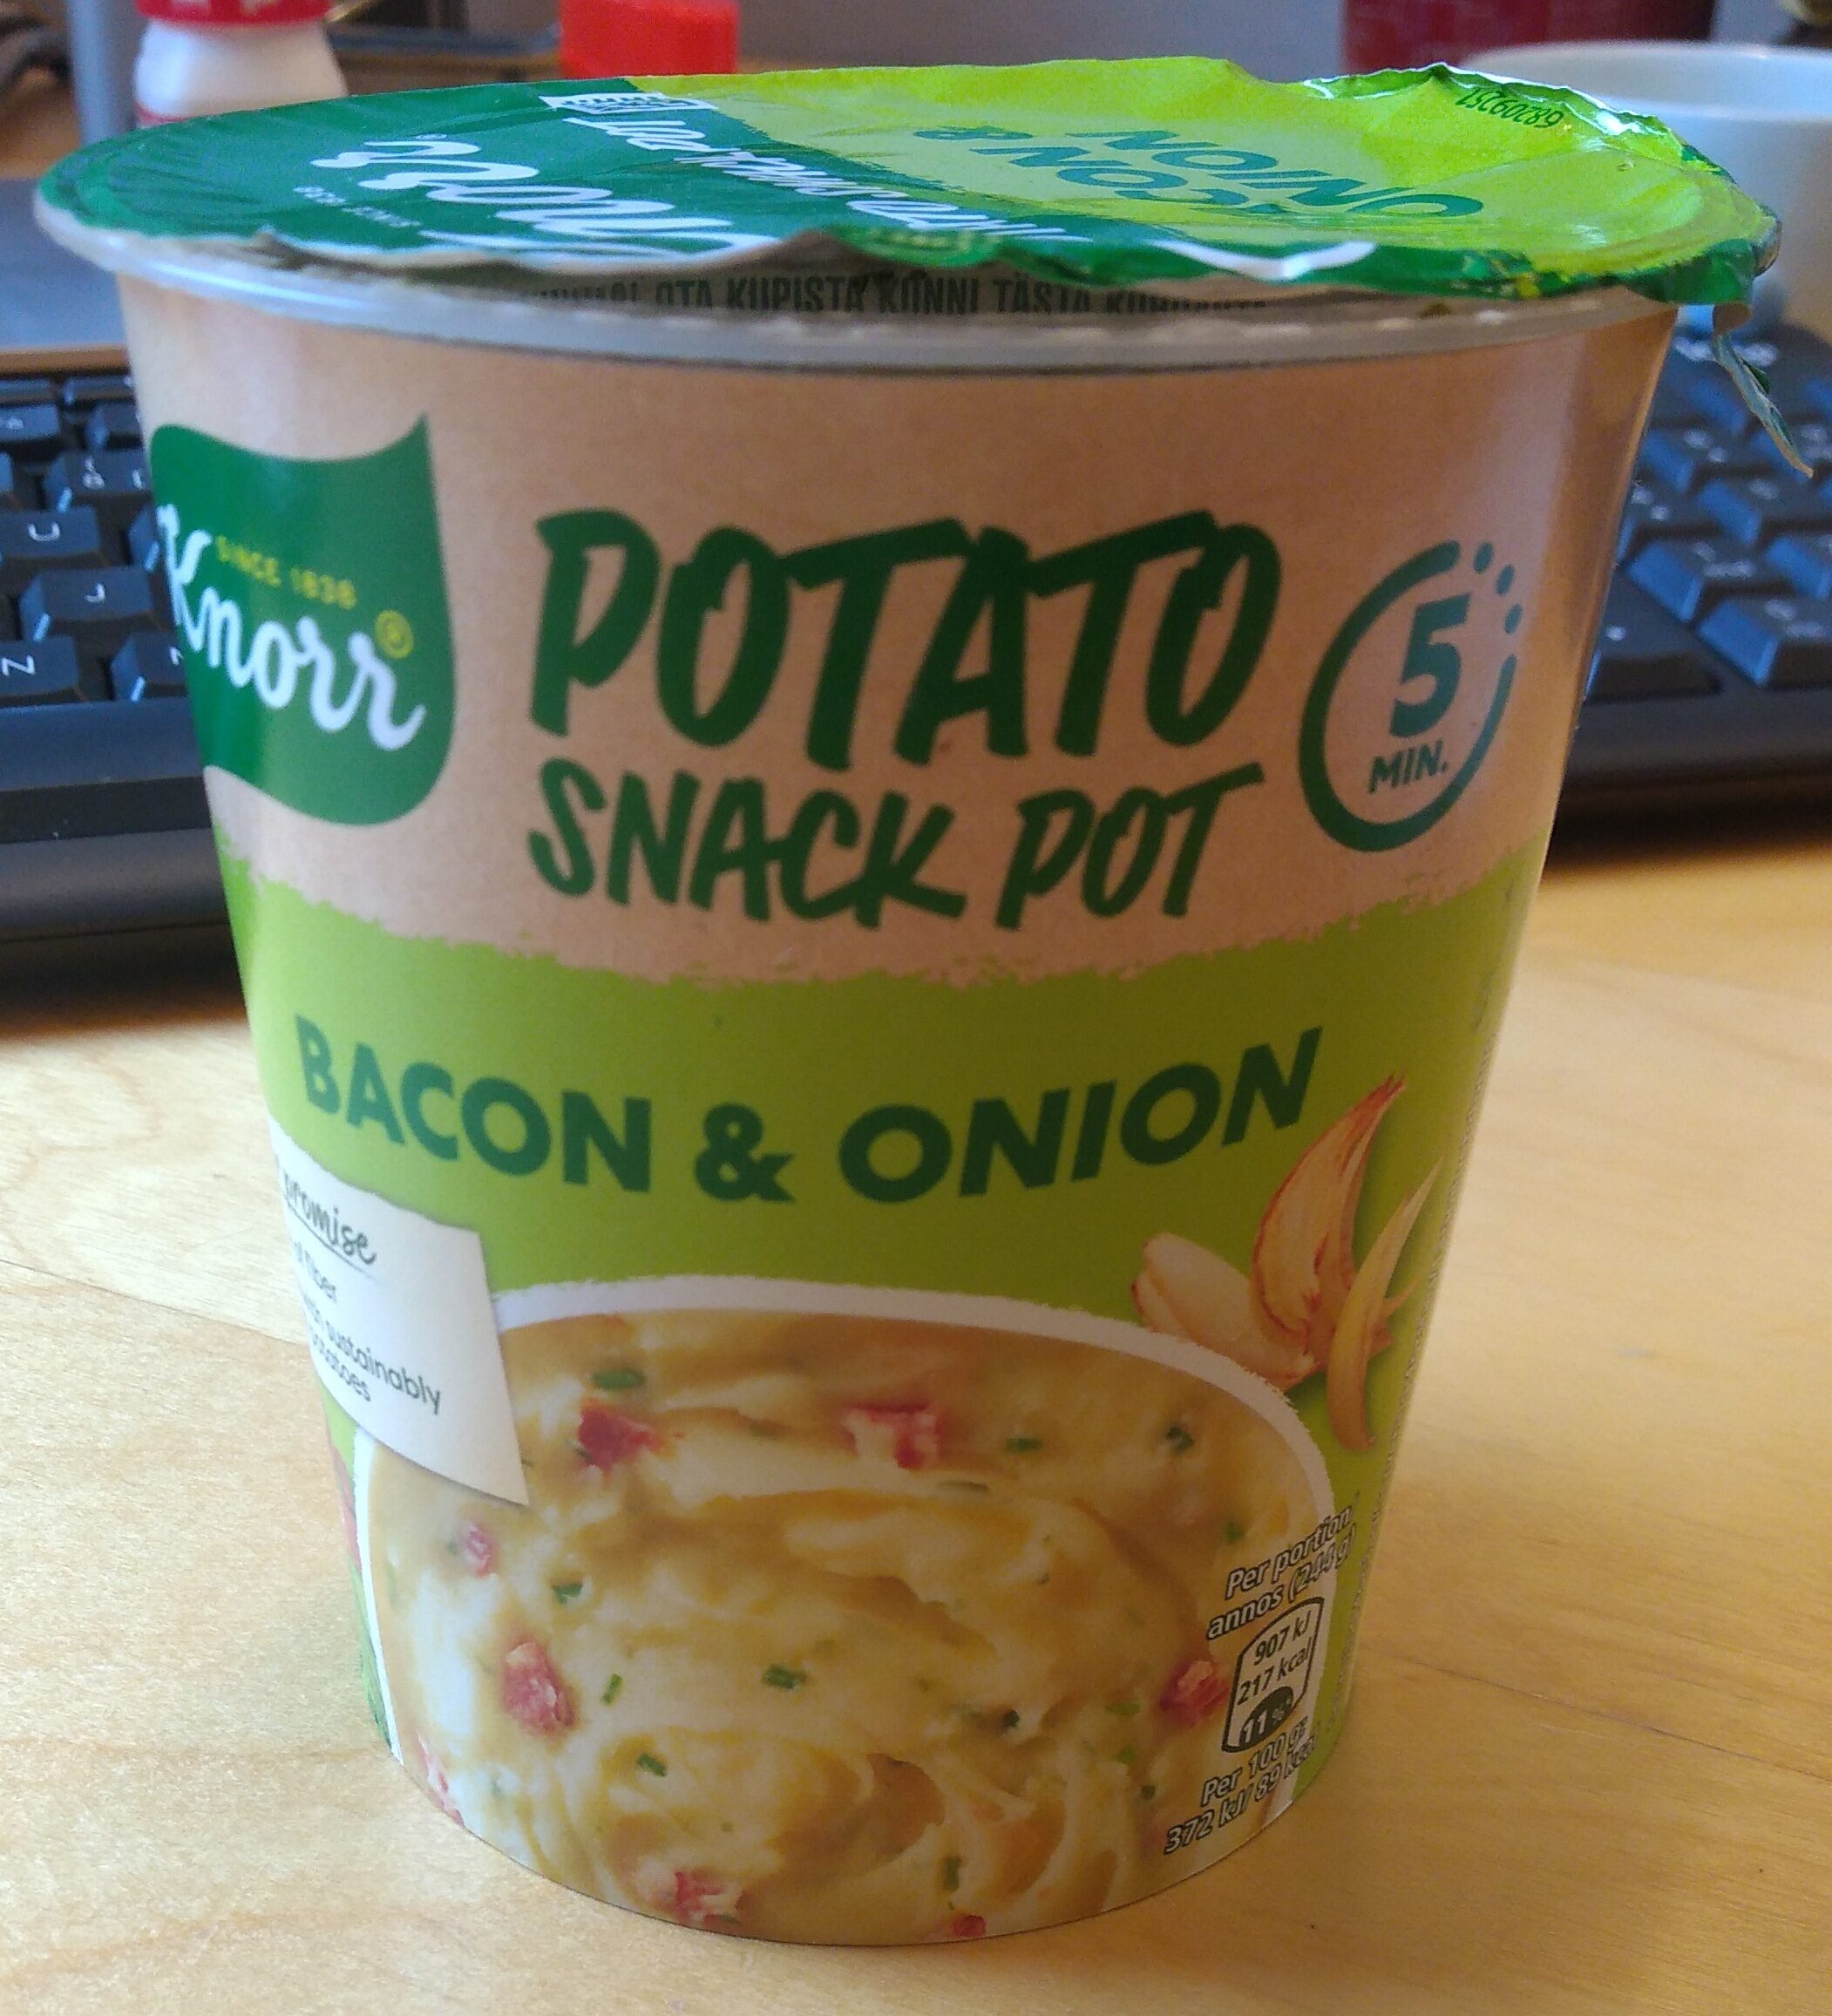 Potato snack pot bacon & onion - Produkt - sv